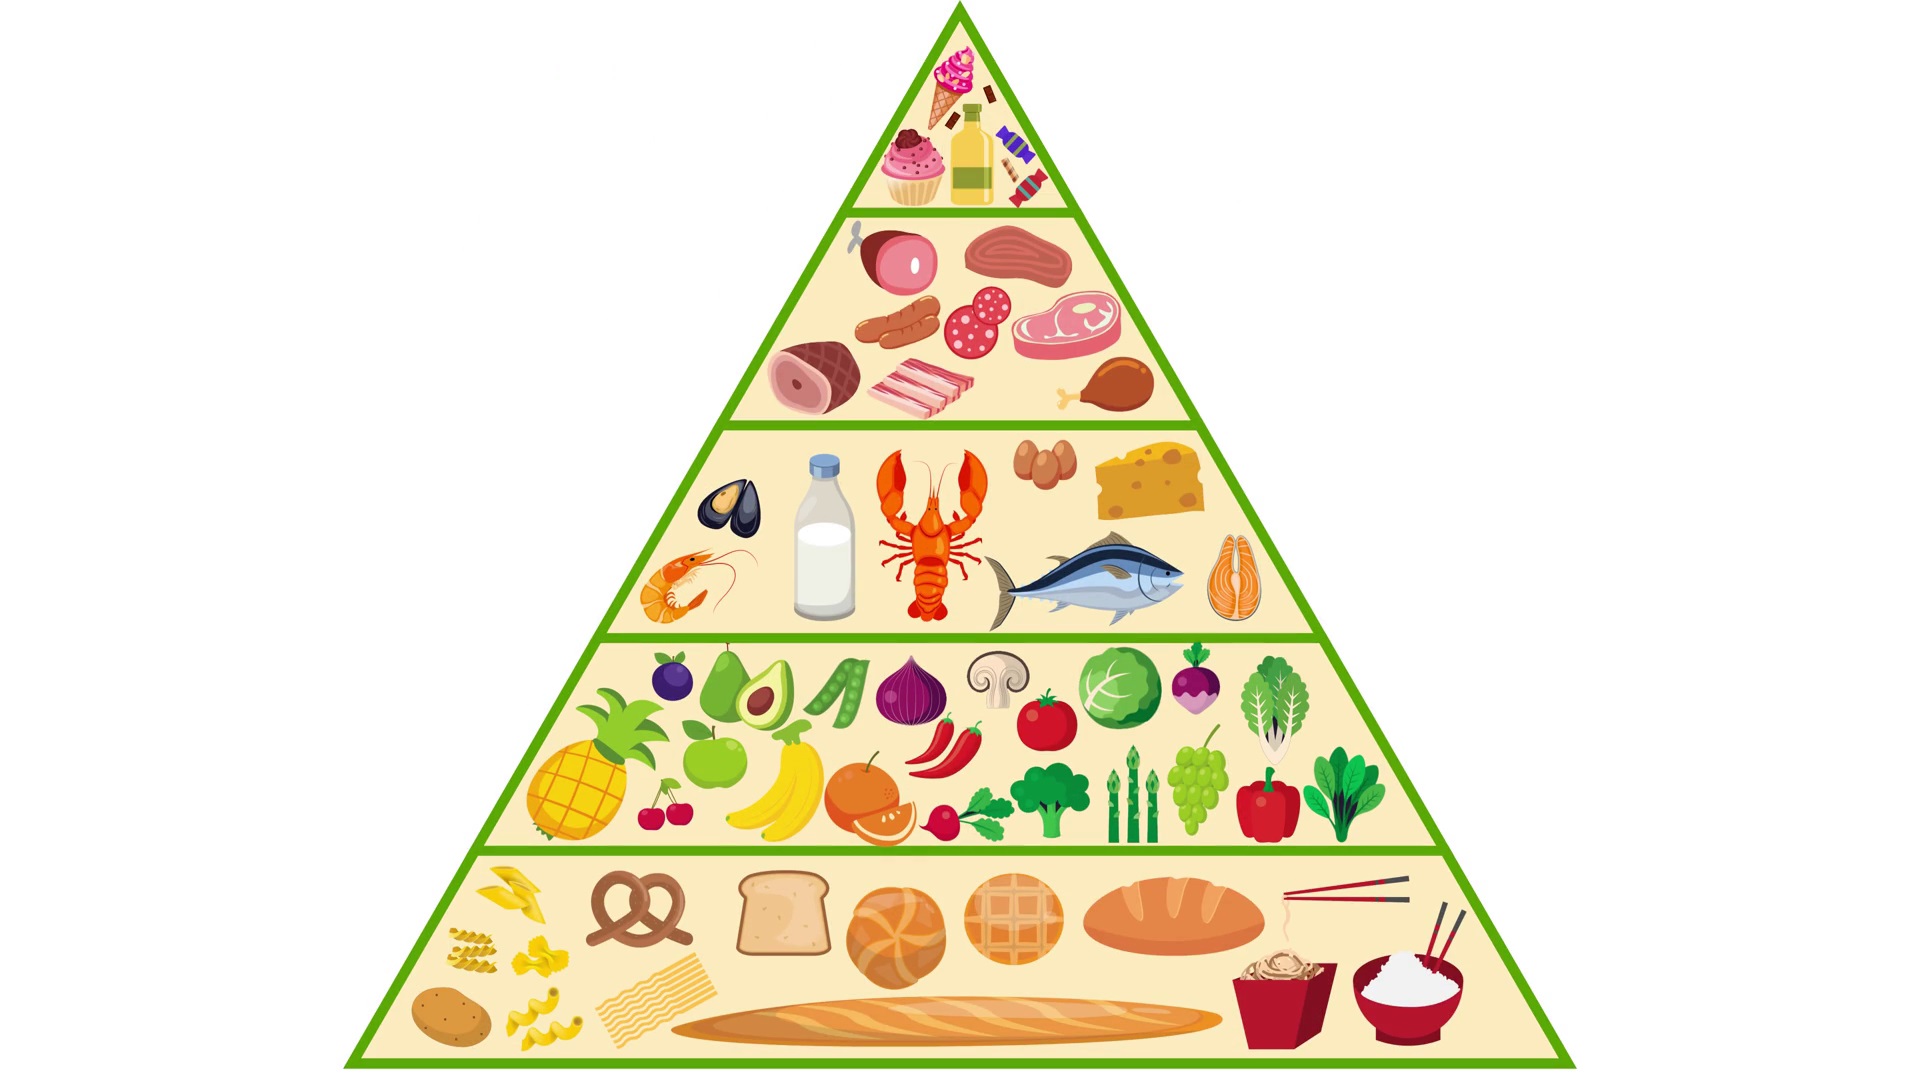 The Real Food Pyramid